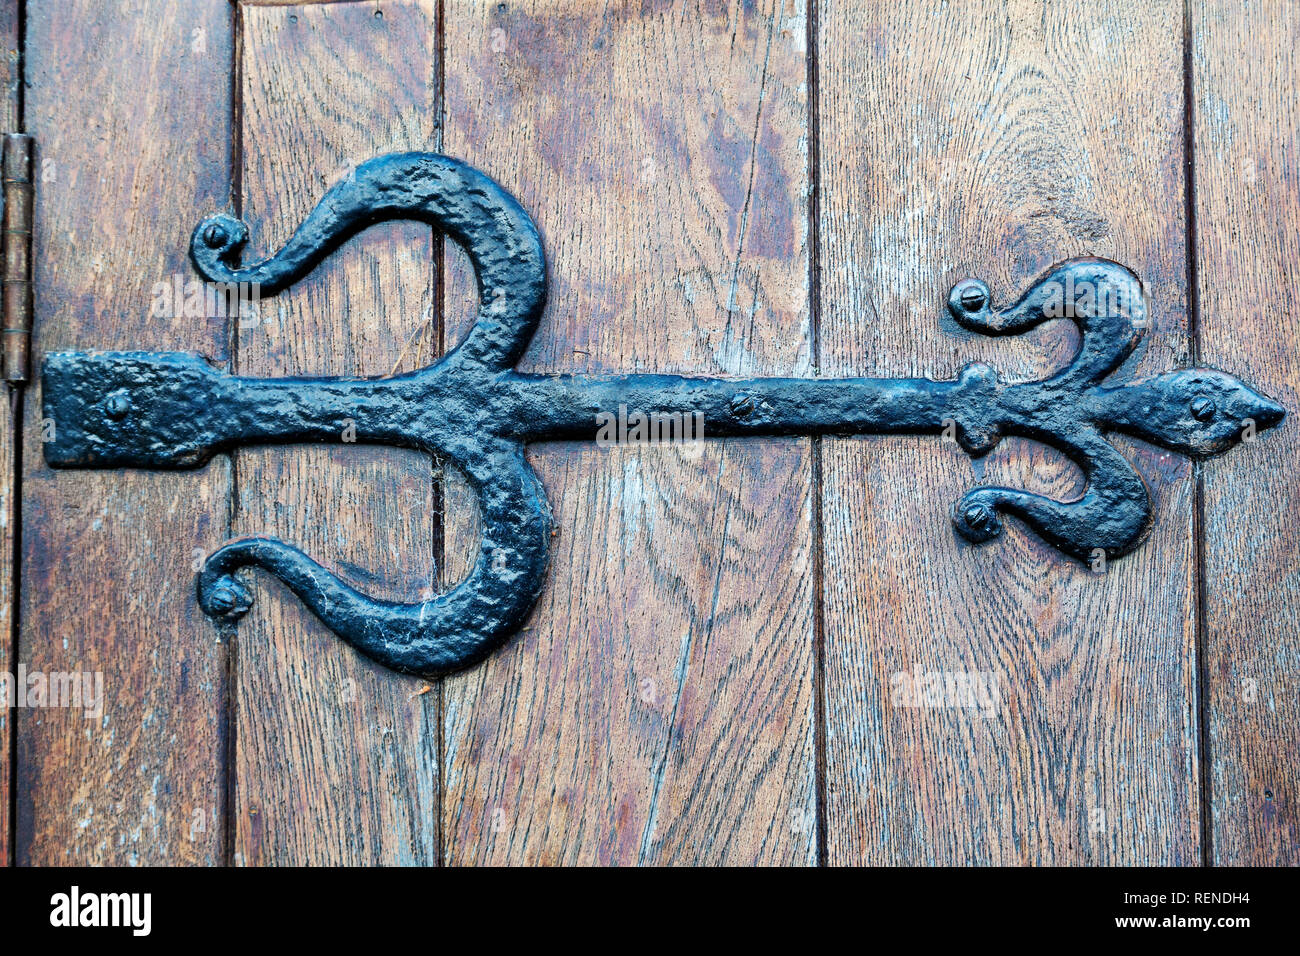 A Tudor-style cast iron door hinge. The hinge is on a wooden door. Stock Photo